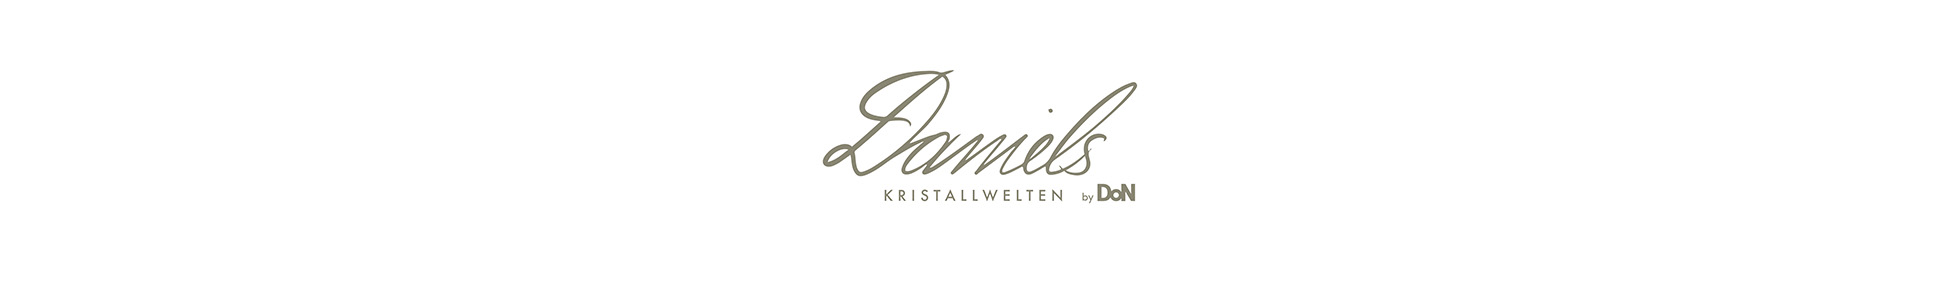 RISTORANTE Daniels Kristallwelten by DoN